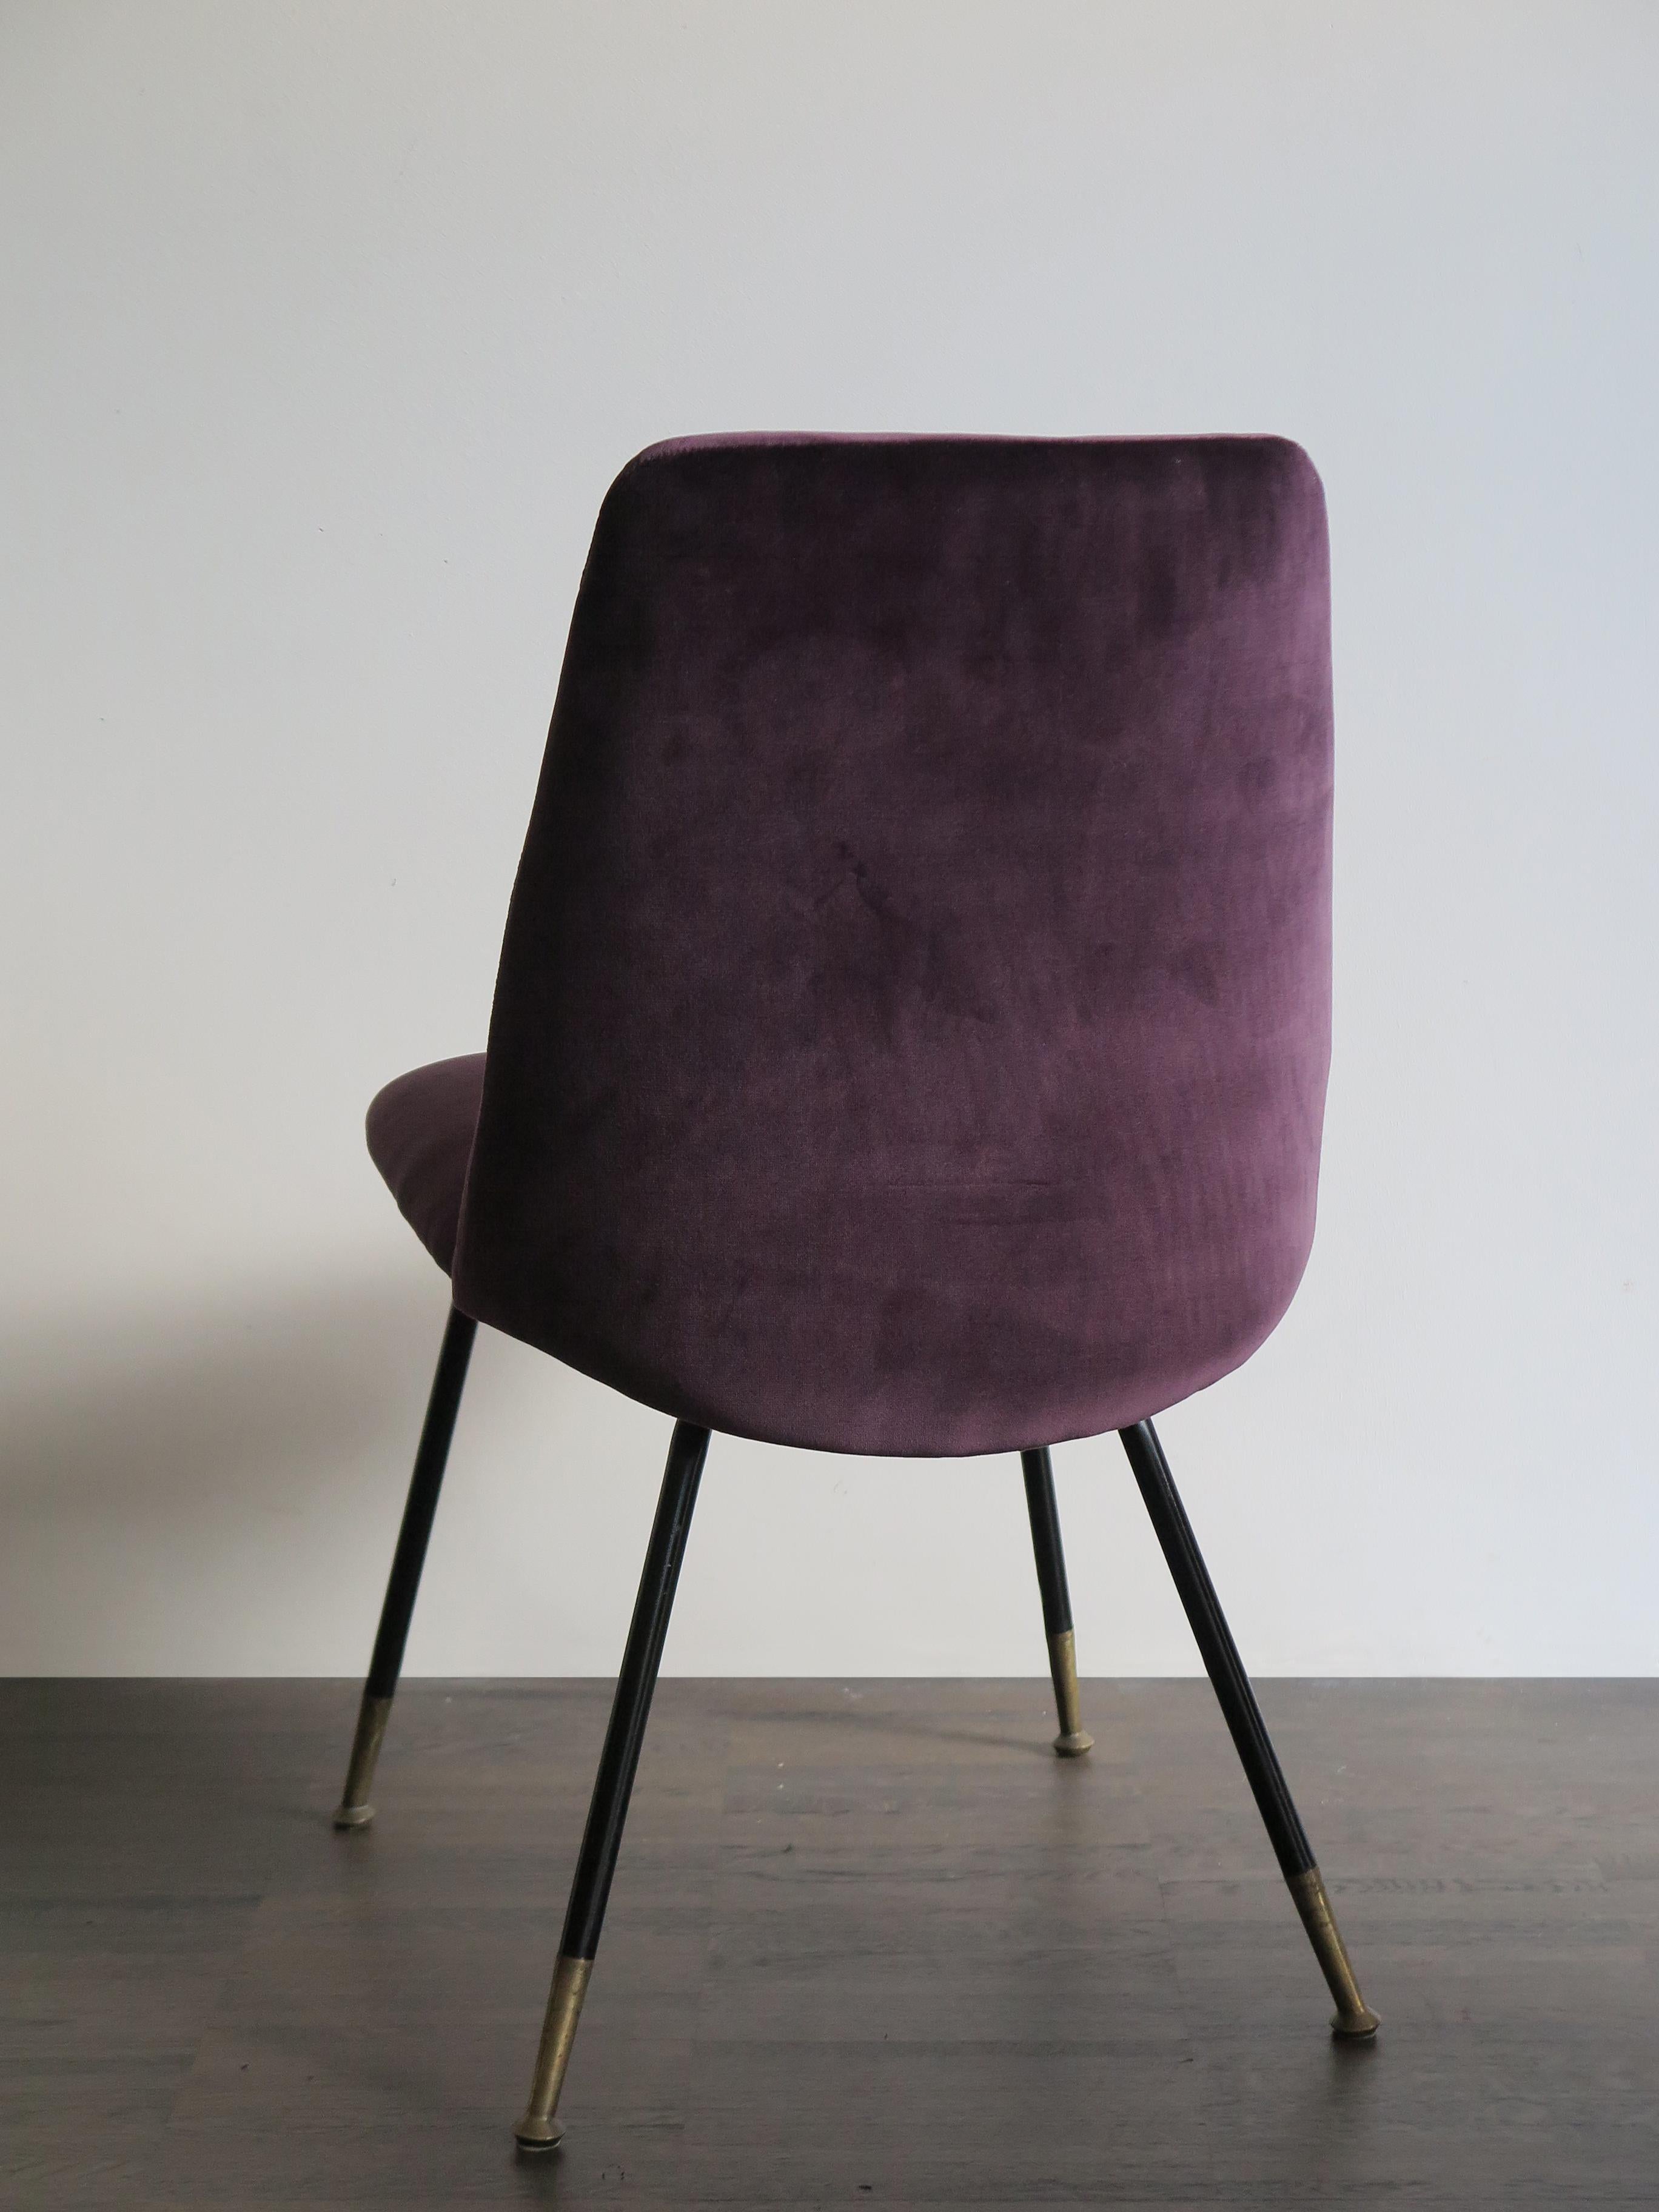 Metal Italian Mid-Century Modern Design Velvet Chairs Armchairs, 1950s